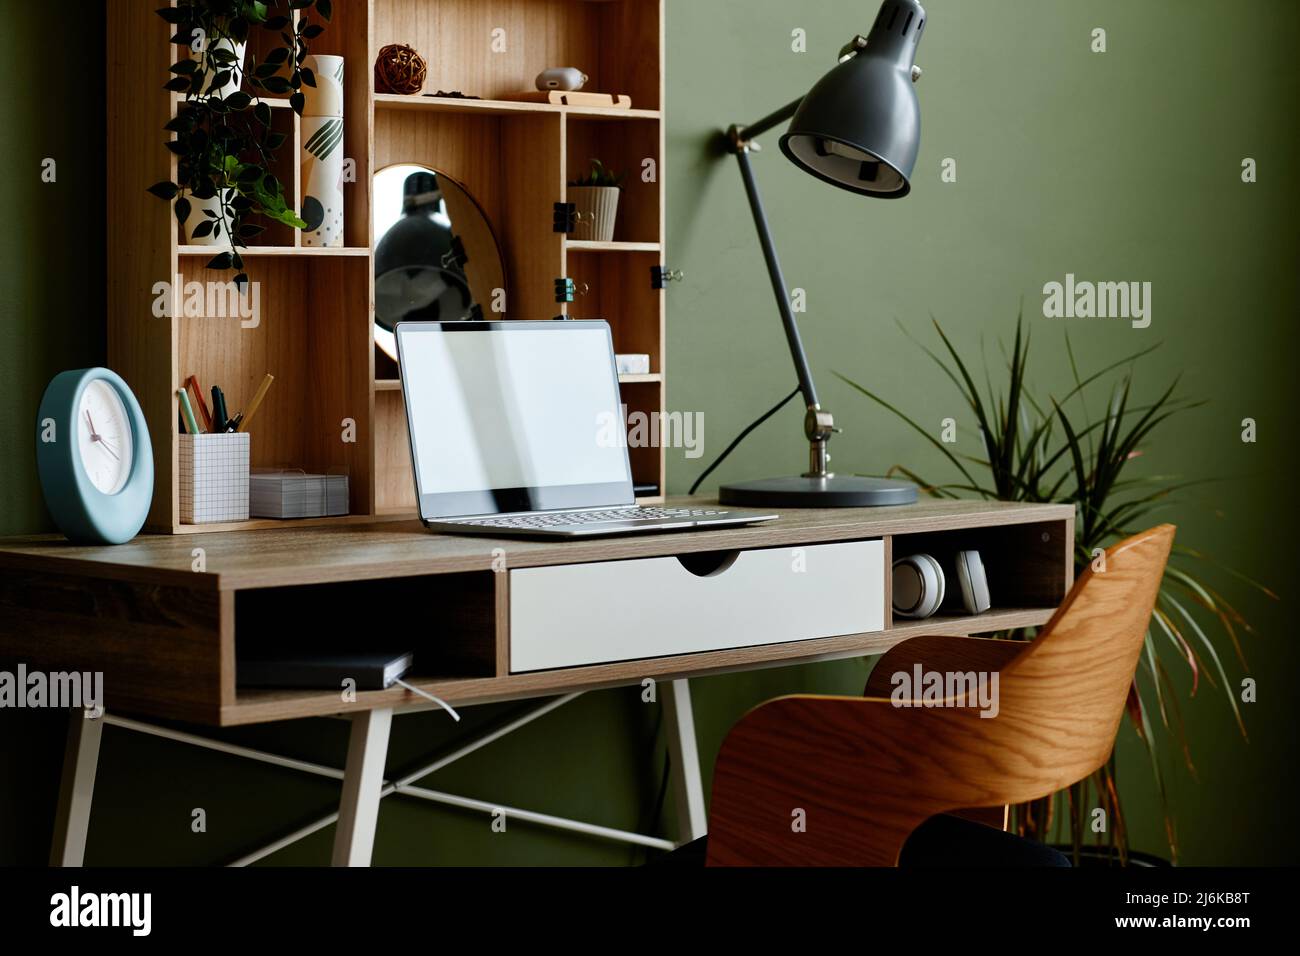 Immagine di sfondo di un ambiente di lavoro eco-domestico decorato da piante d'abitazione verdi Foto Stock